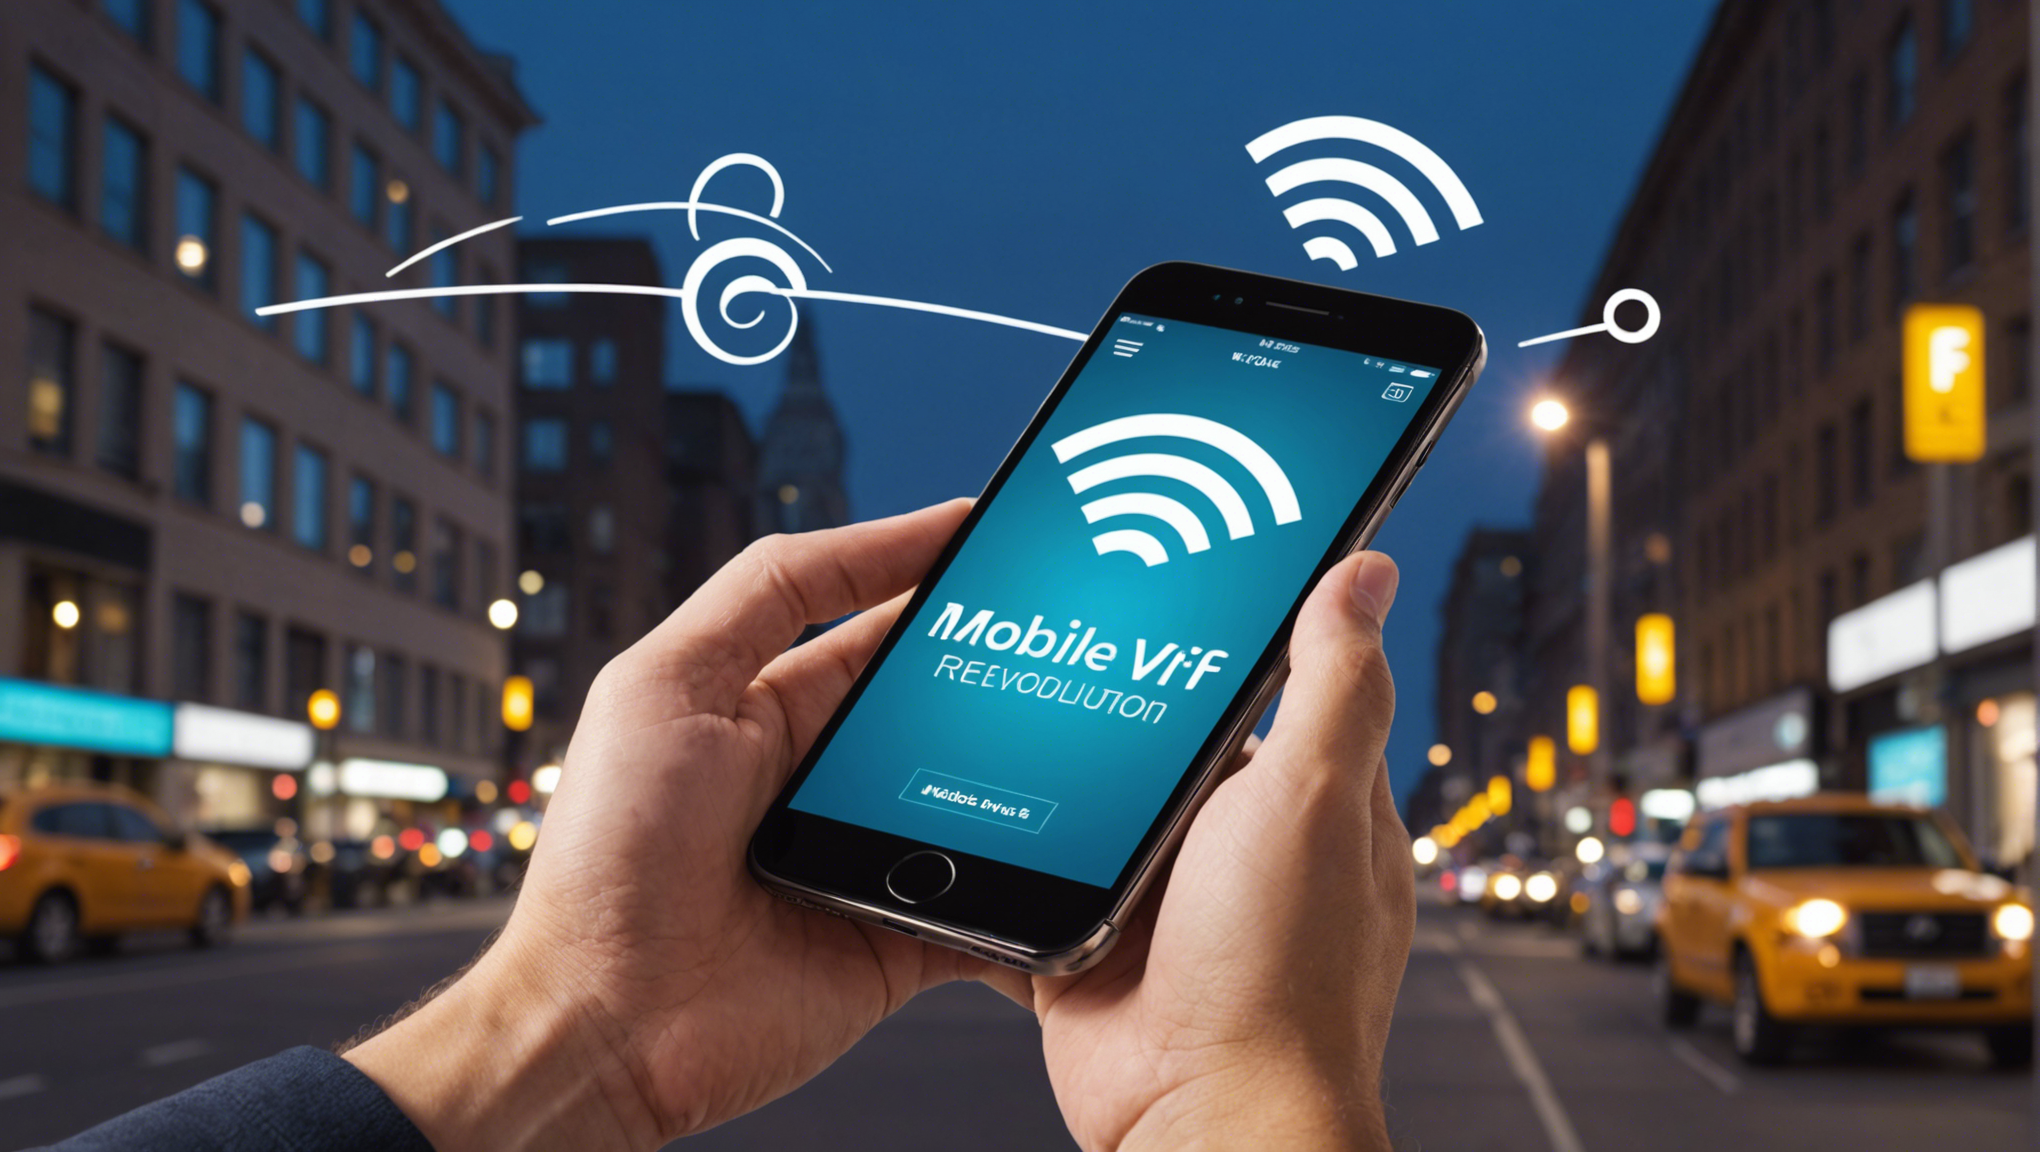 découvrez comment le wi-fi mobile révolutionne notre manière de nous connecter sans fil et ses implications sur notre quotidien.